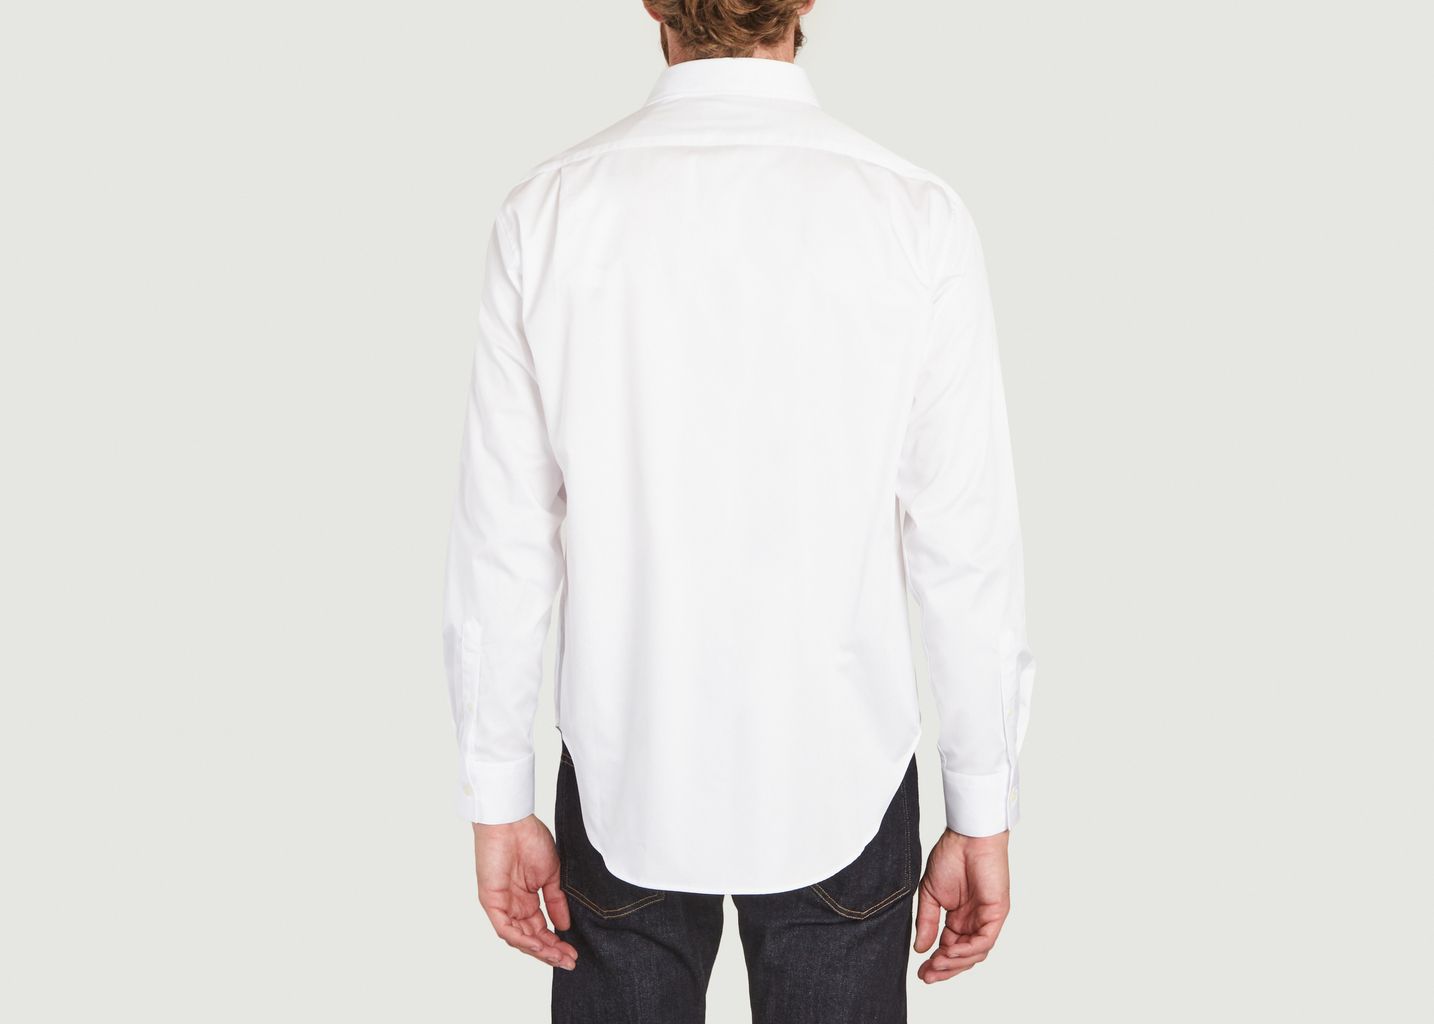 Breteuil Limited Edition shirt  - Maison Labiche